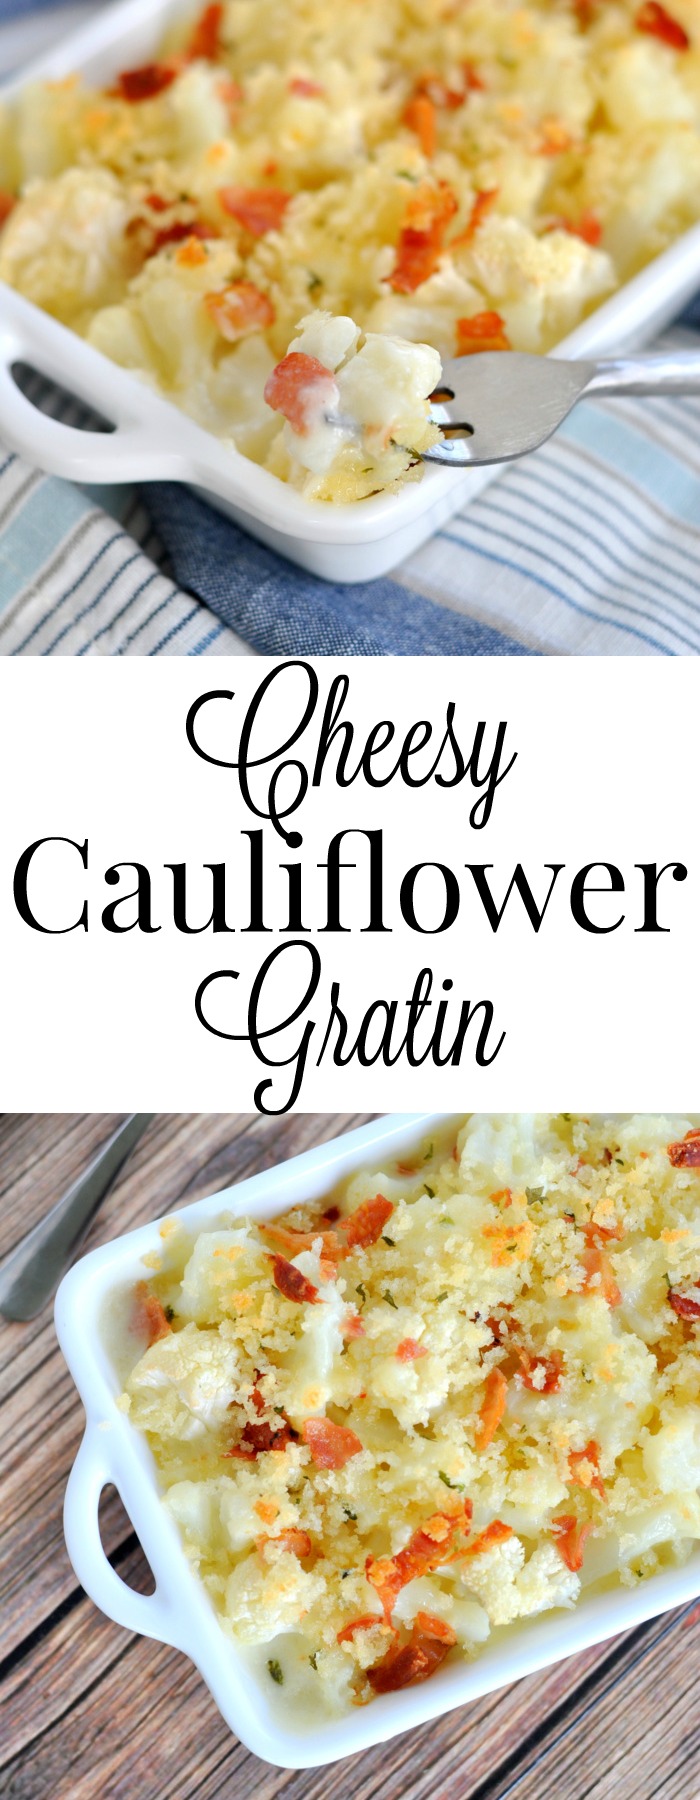 The BEST way to eat cauliflower is in a cheesy cauliflower gratin!